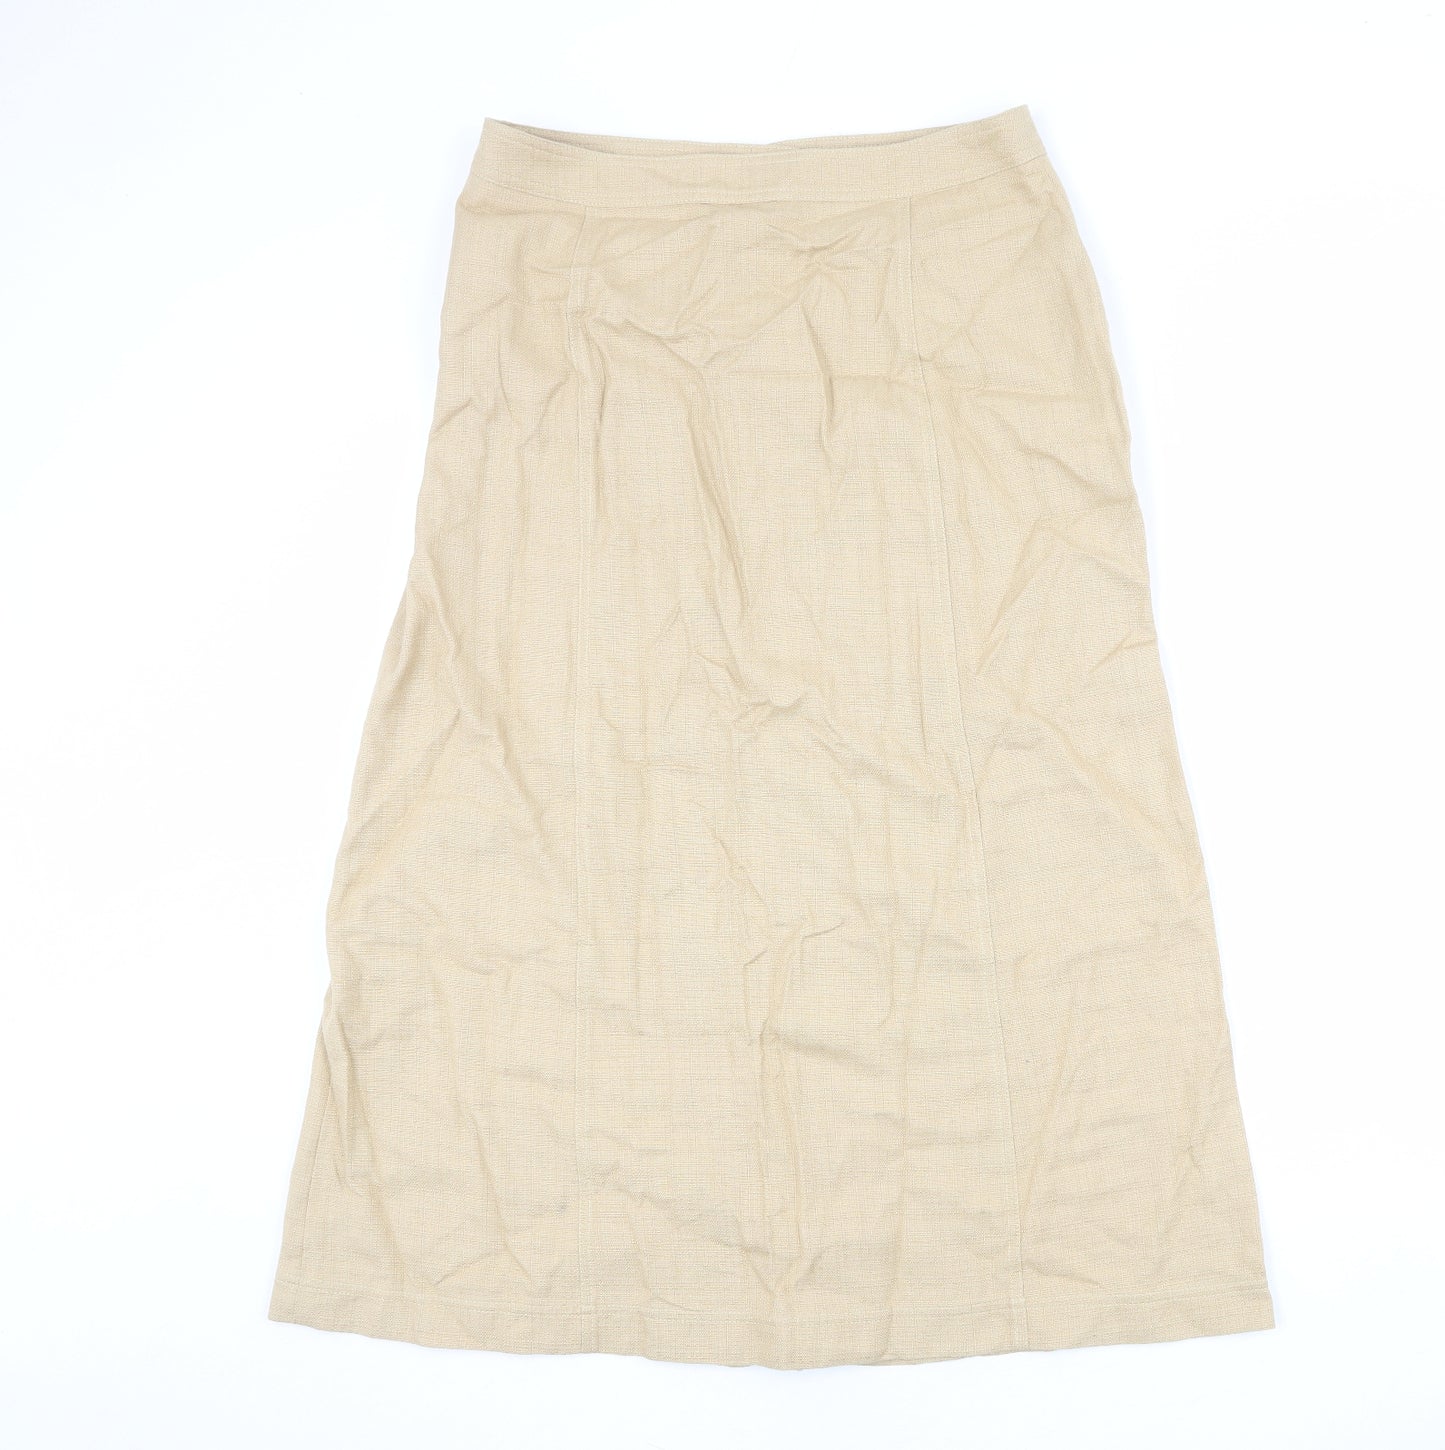 Penny Plain Womens Beige Cotton A-Line Skirt Size 14 Button